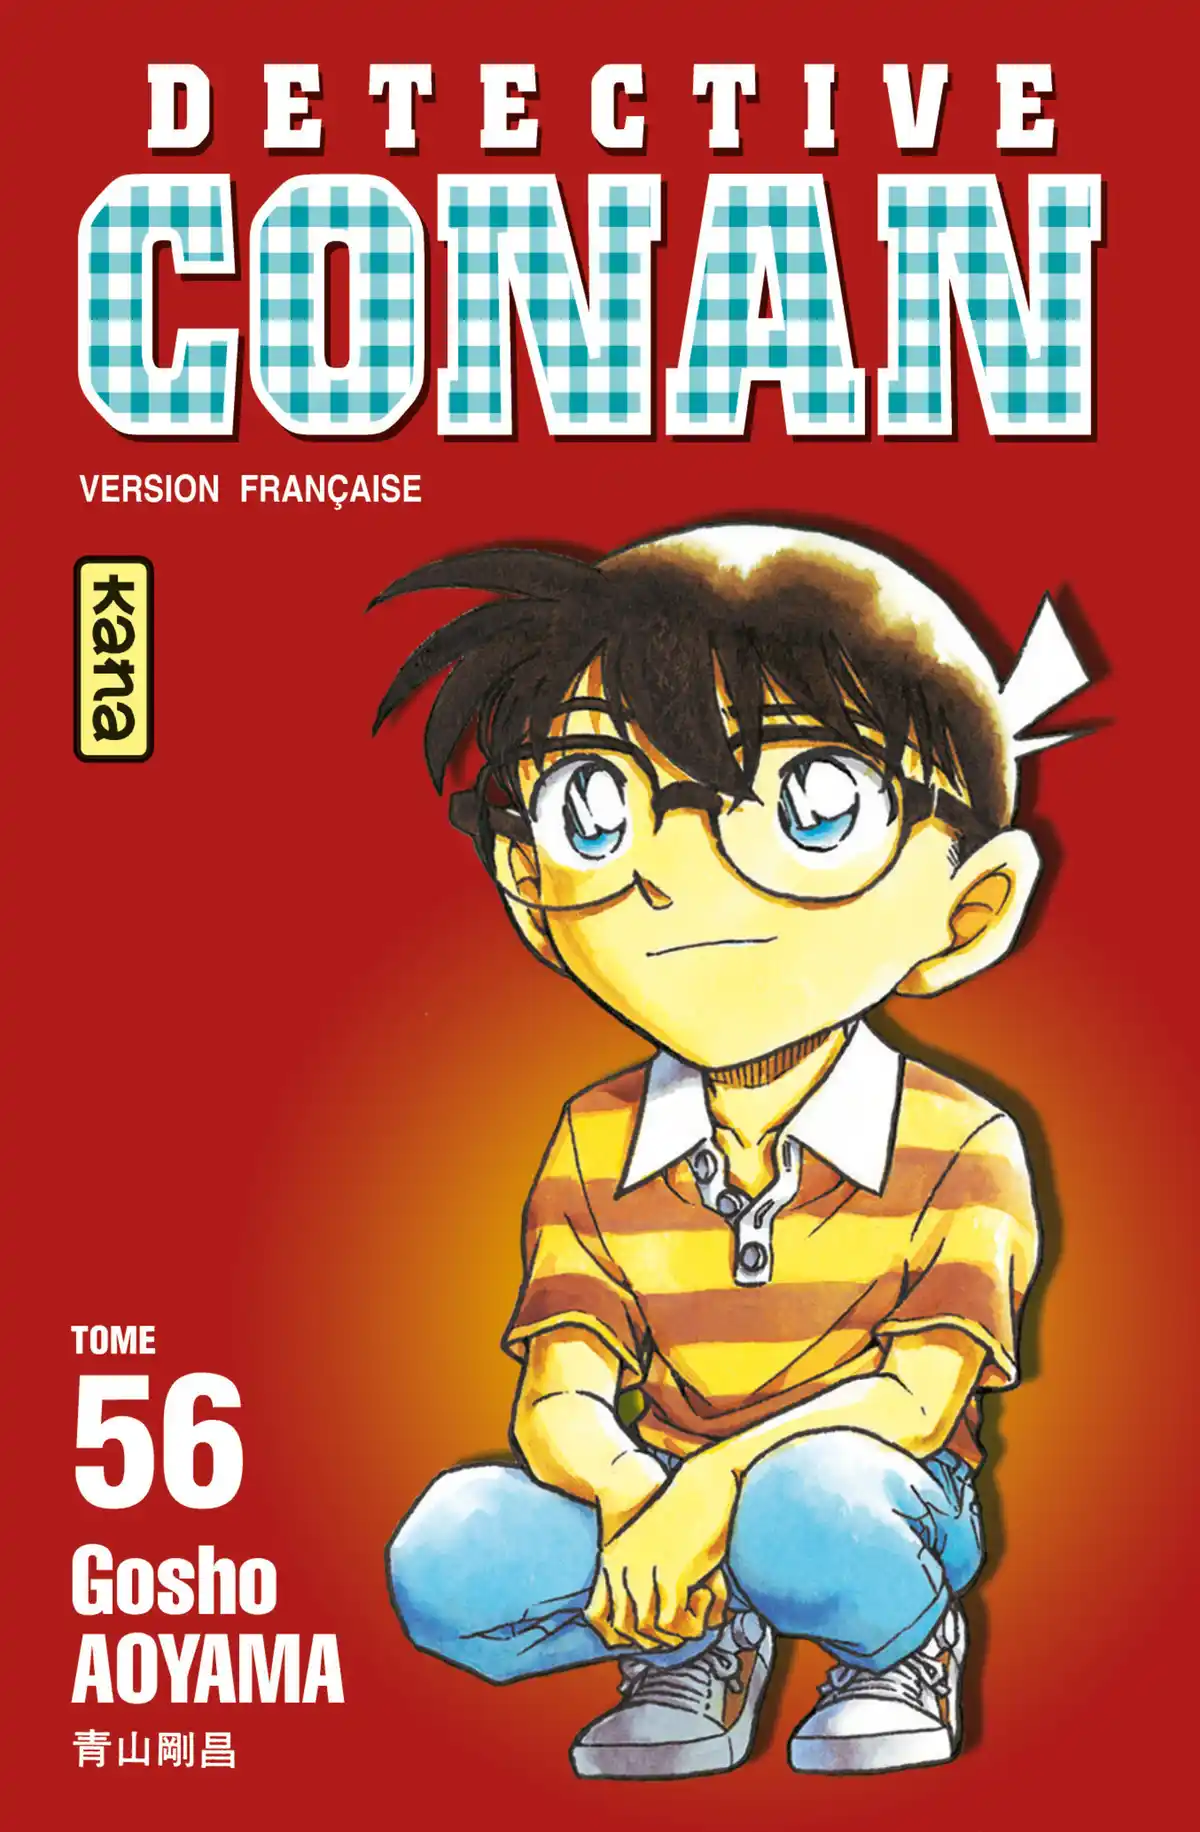 Détective Conan Volume 56 page 1